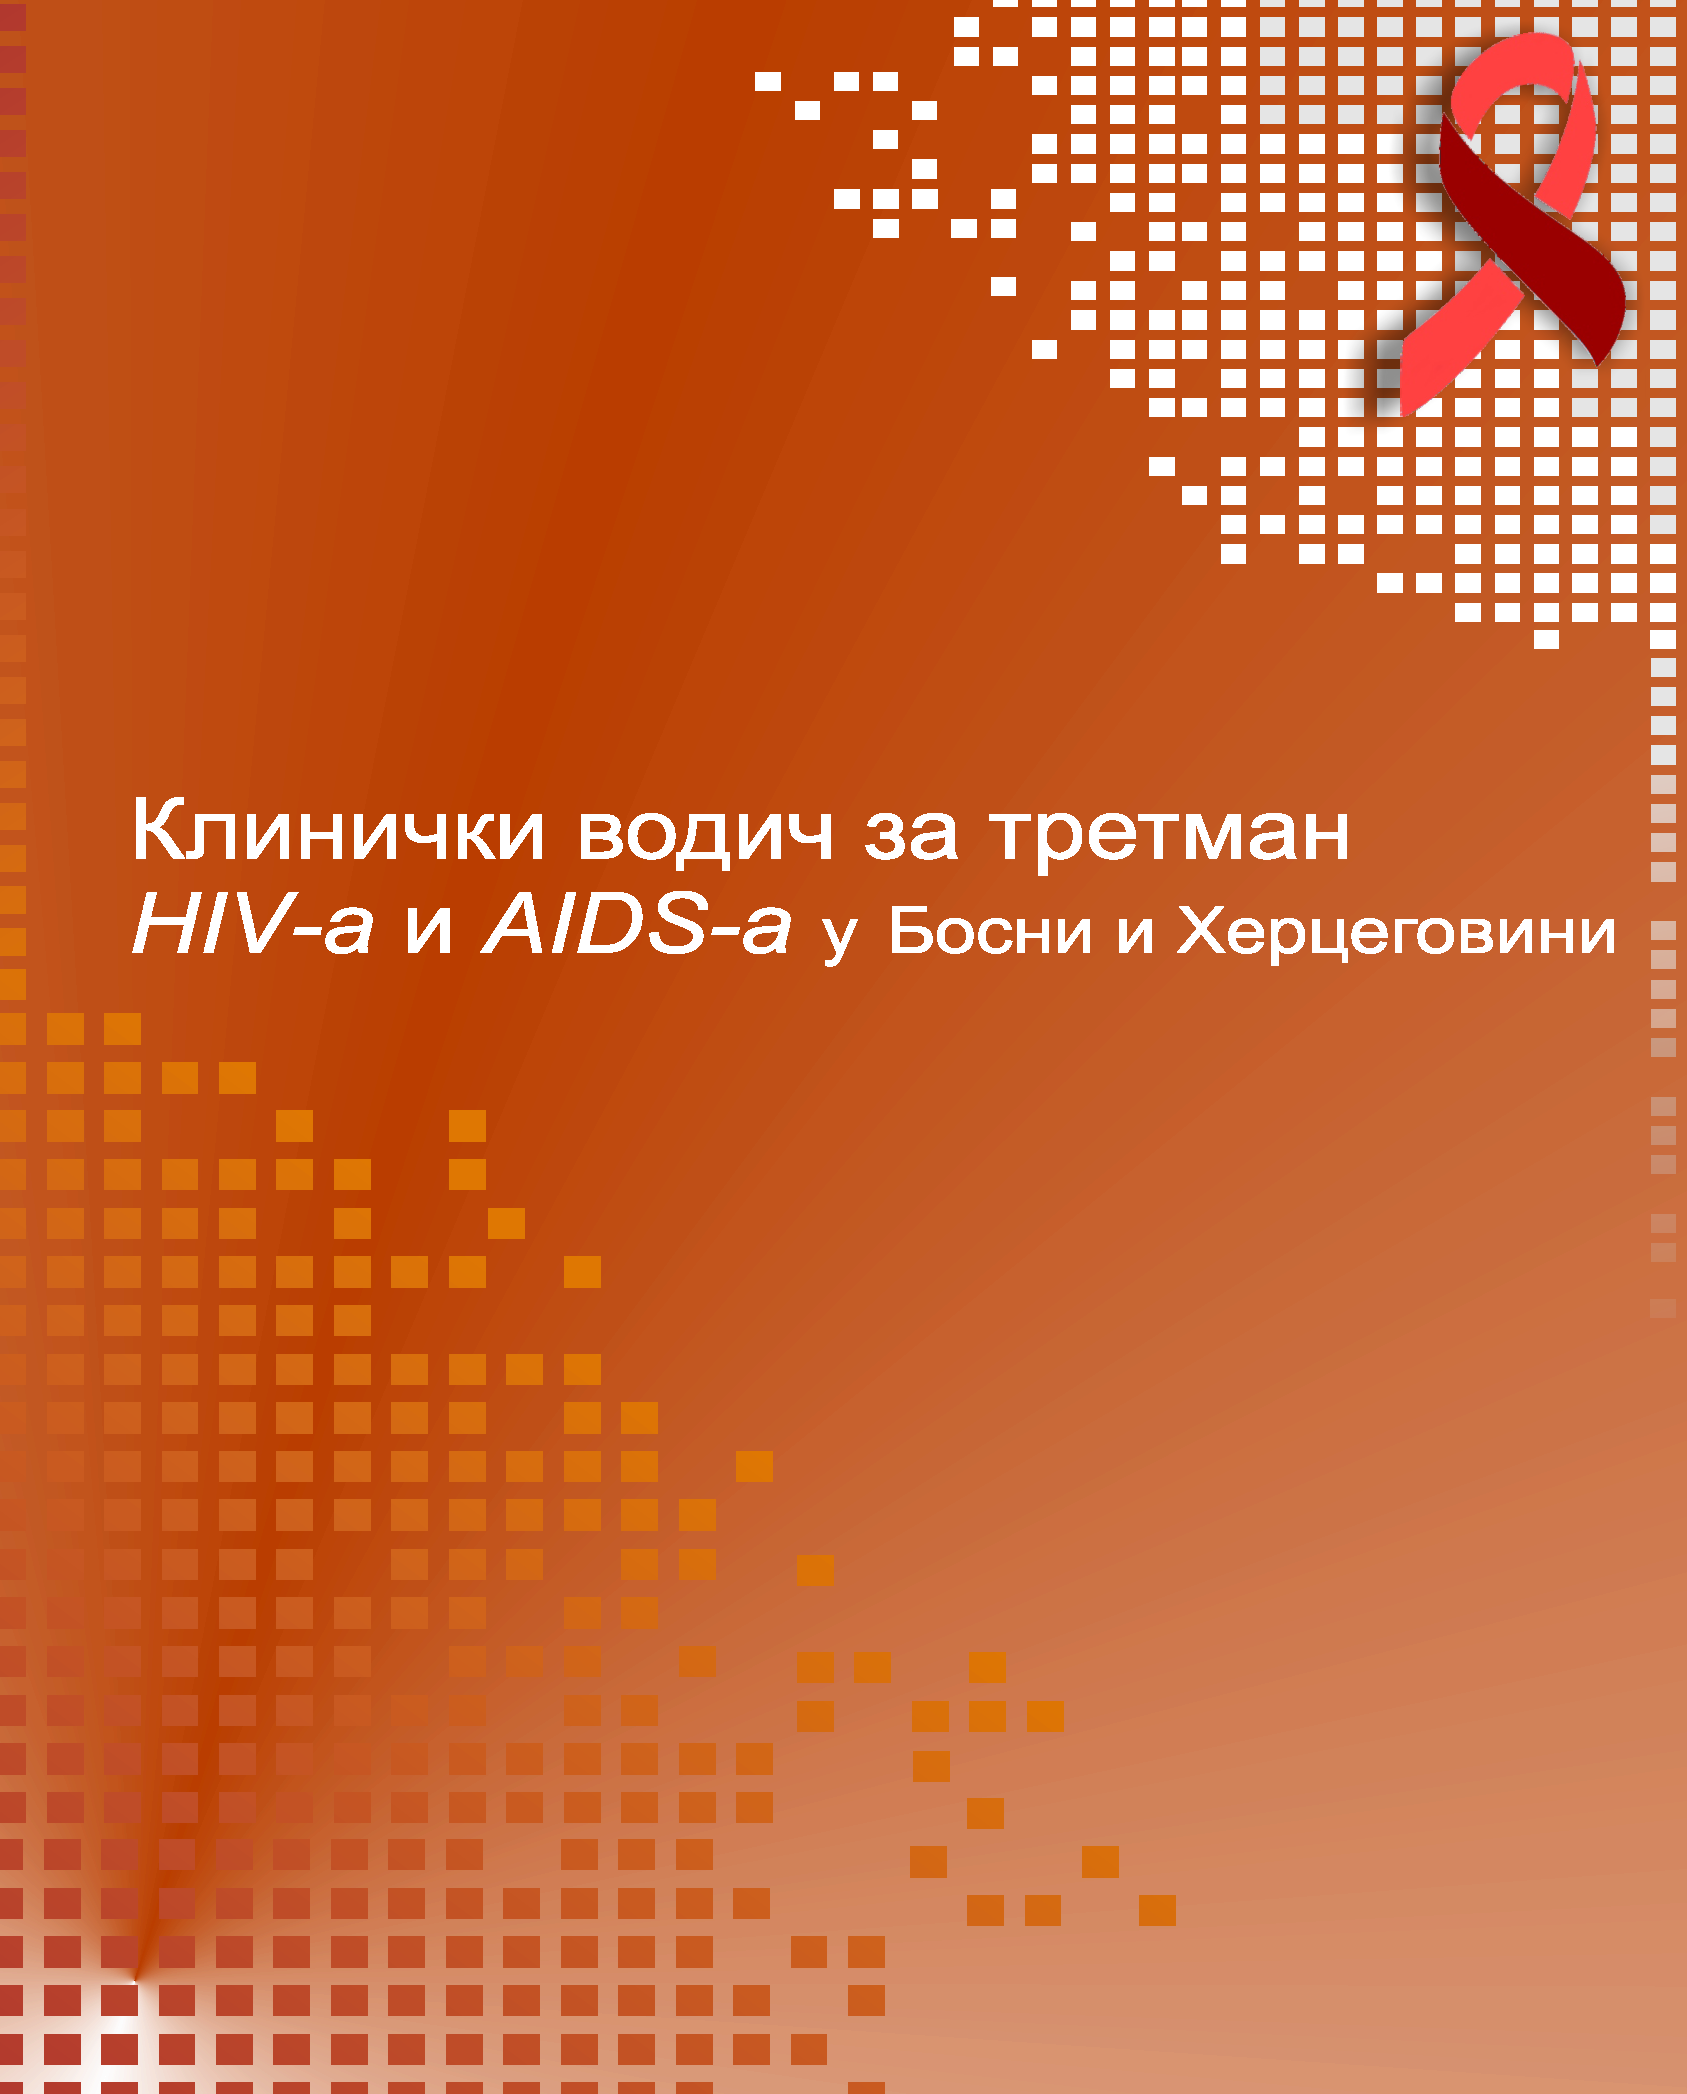 Клинички водич за третман ХИВ-а и АИДС-а у Босни и Херцеговини, 2013. година